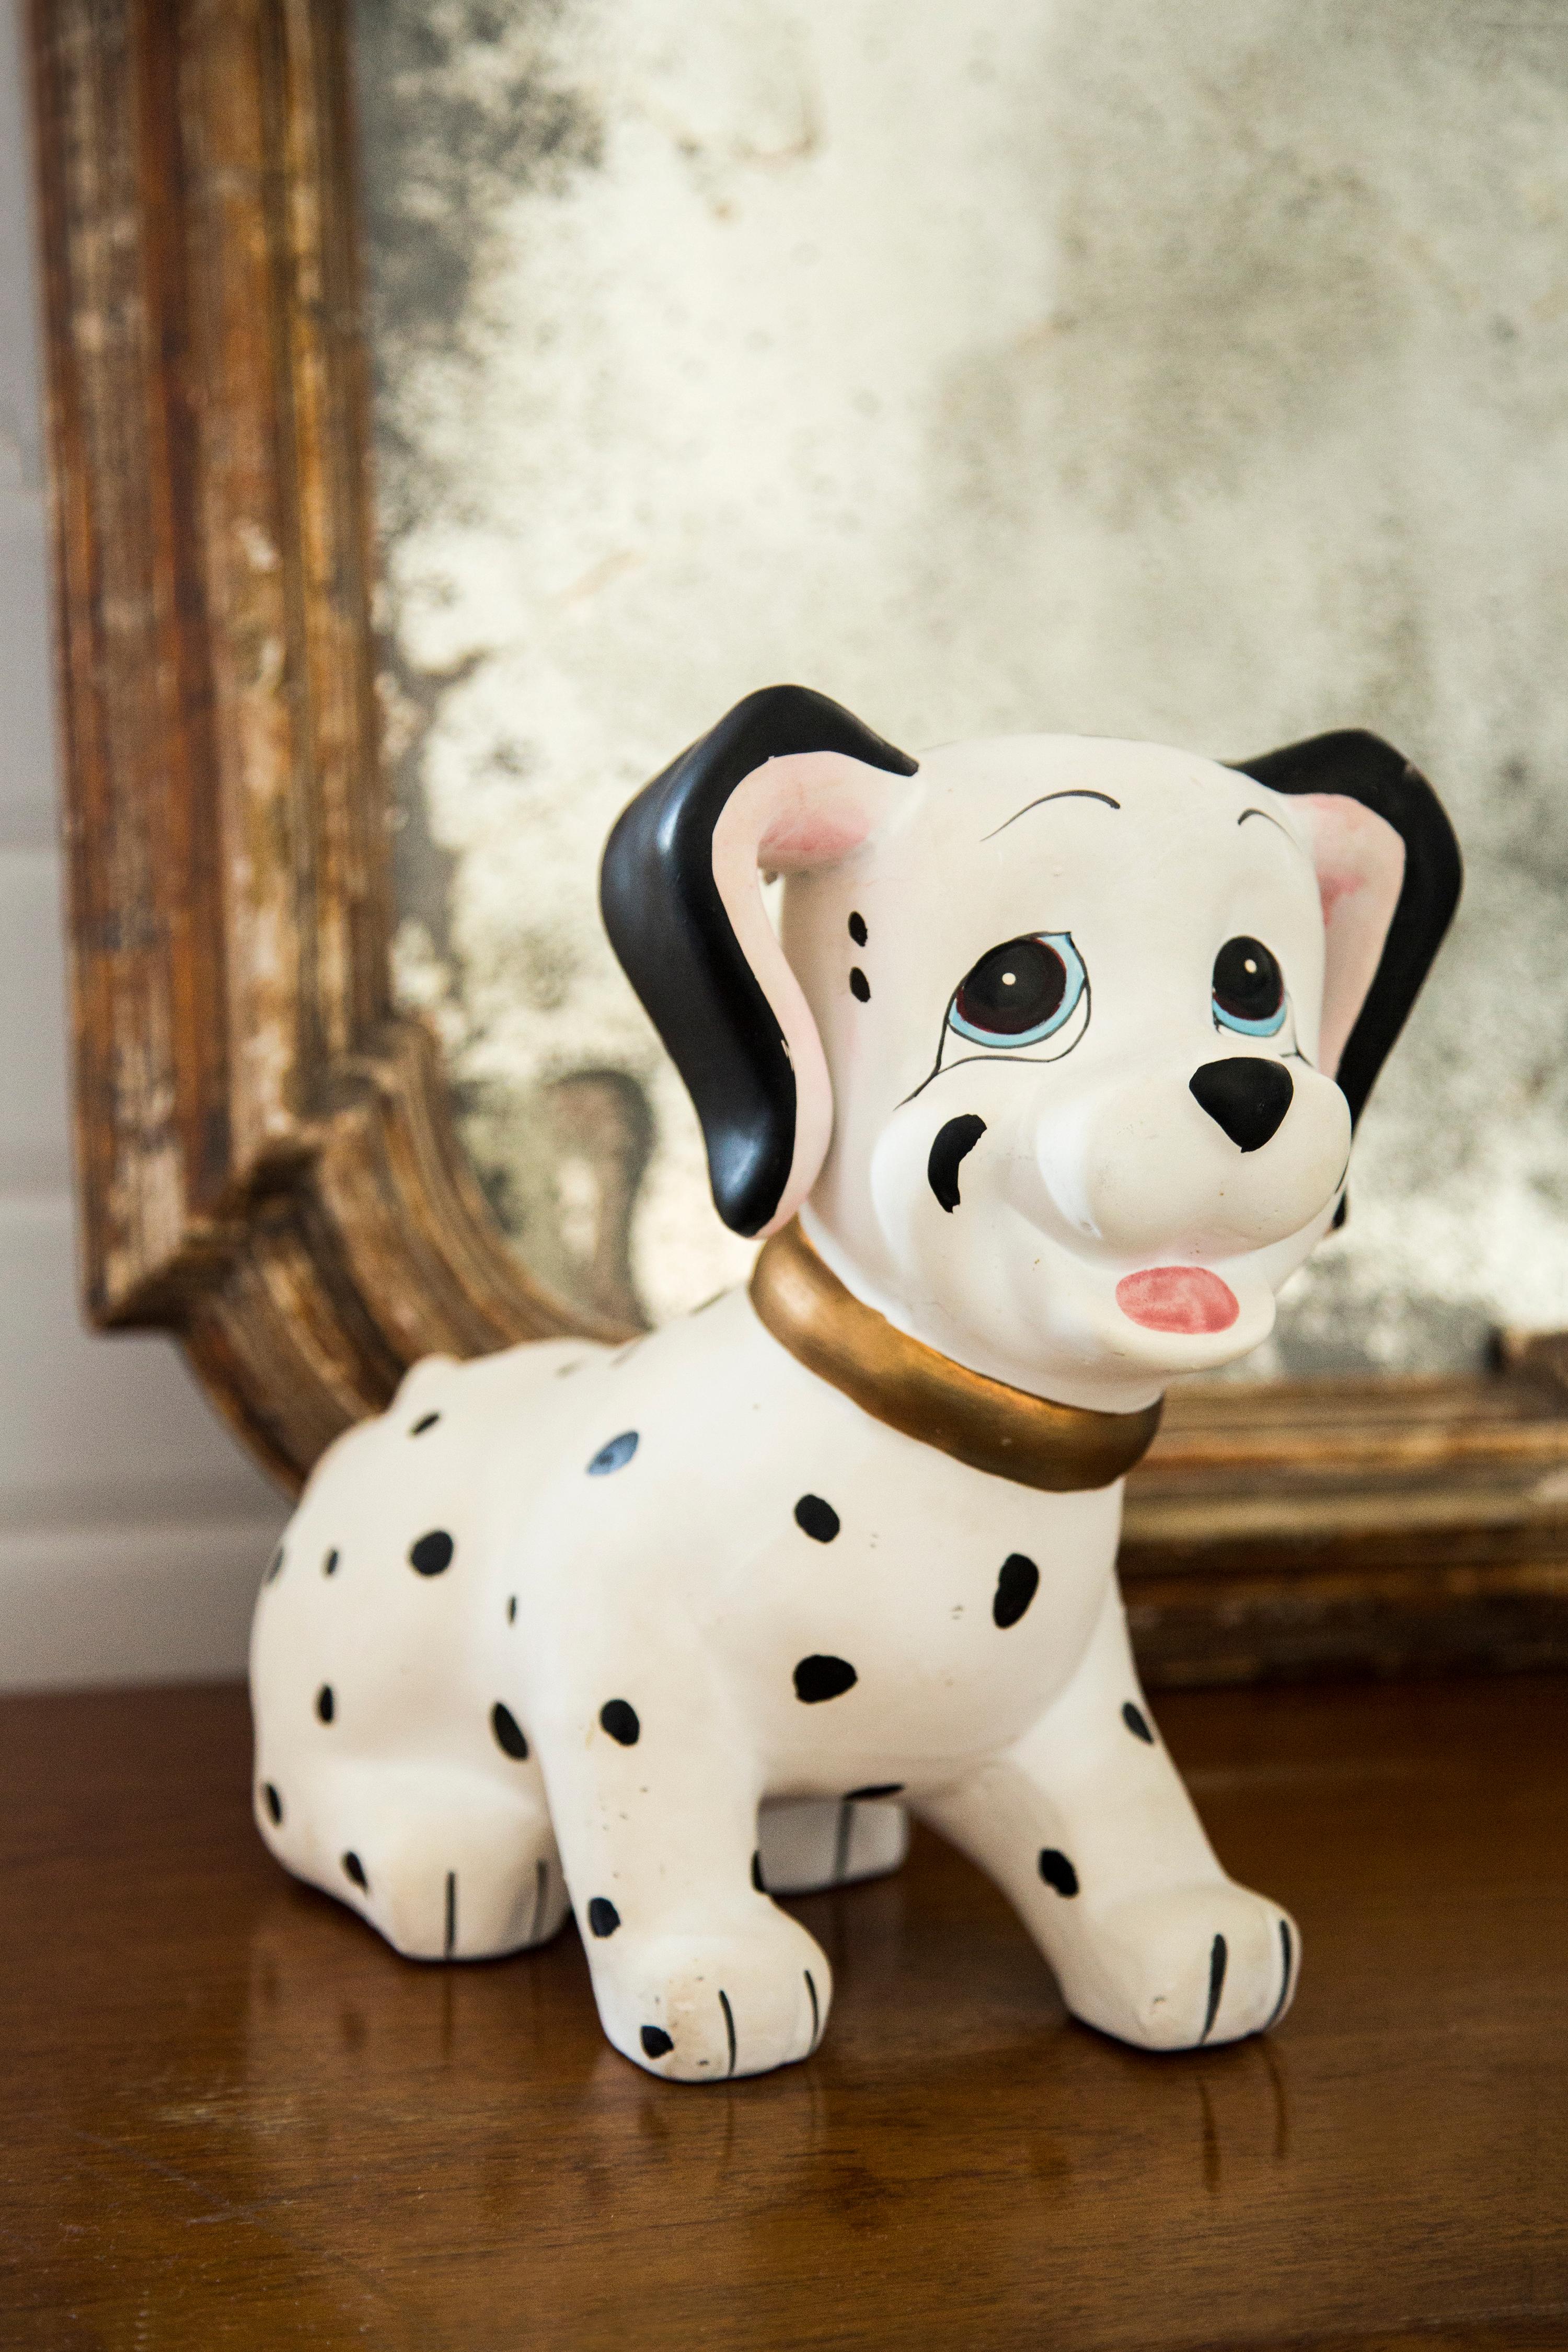 Céramique peinte, très bon état d'origine vintage. Pas de dommages ni de fissures. Belle et unique sculpture décorative. La sculpture de chien dalmatien a été produite en Italie. Un seul chien disponible.